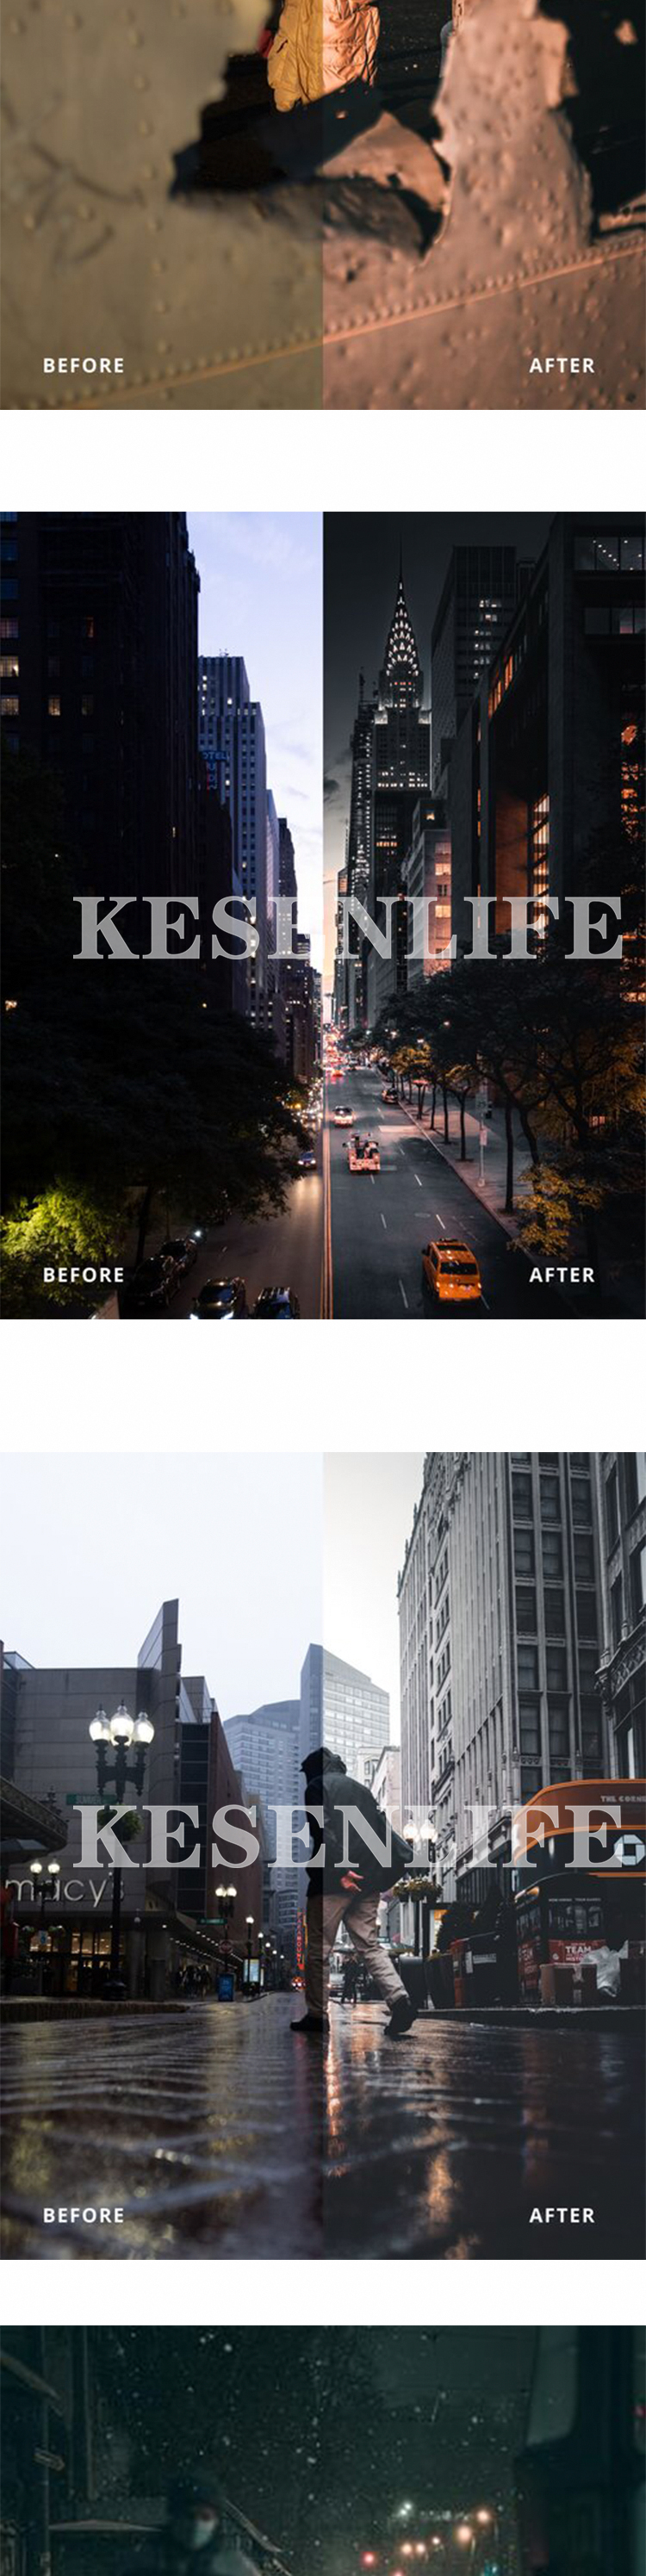 街头摄影师城市夜景预设滤镜，适用于Lightroom/PS/手机版LR/PR/AE/FCPX/Luts/达芬奇等调色软件